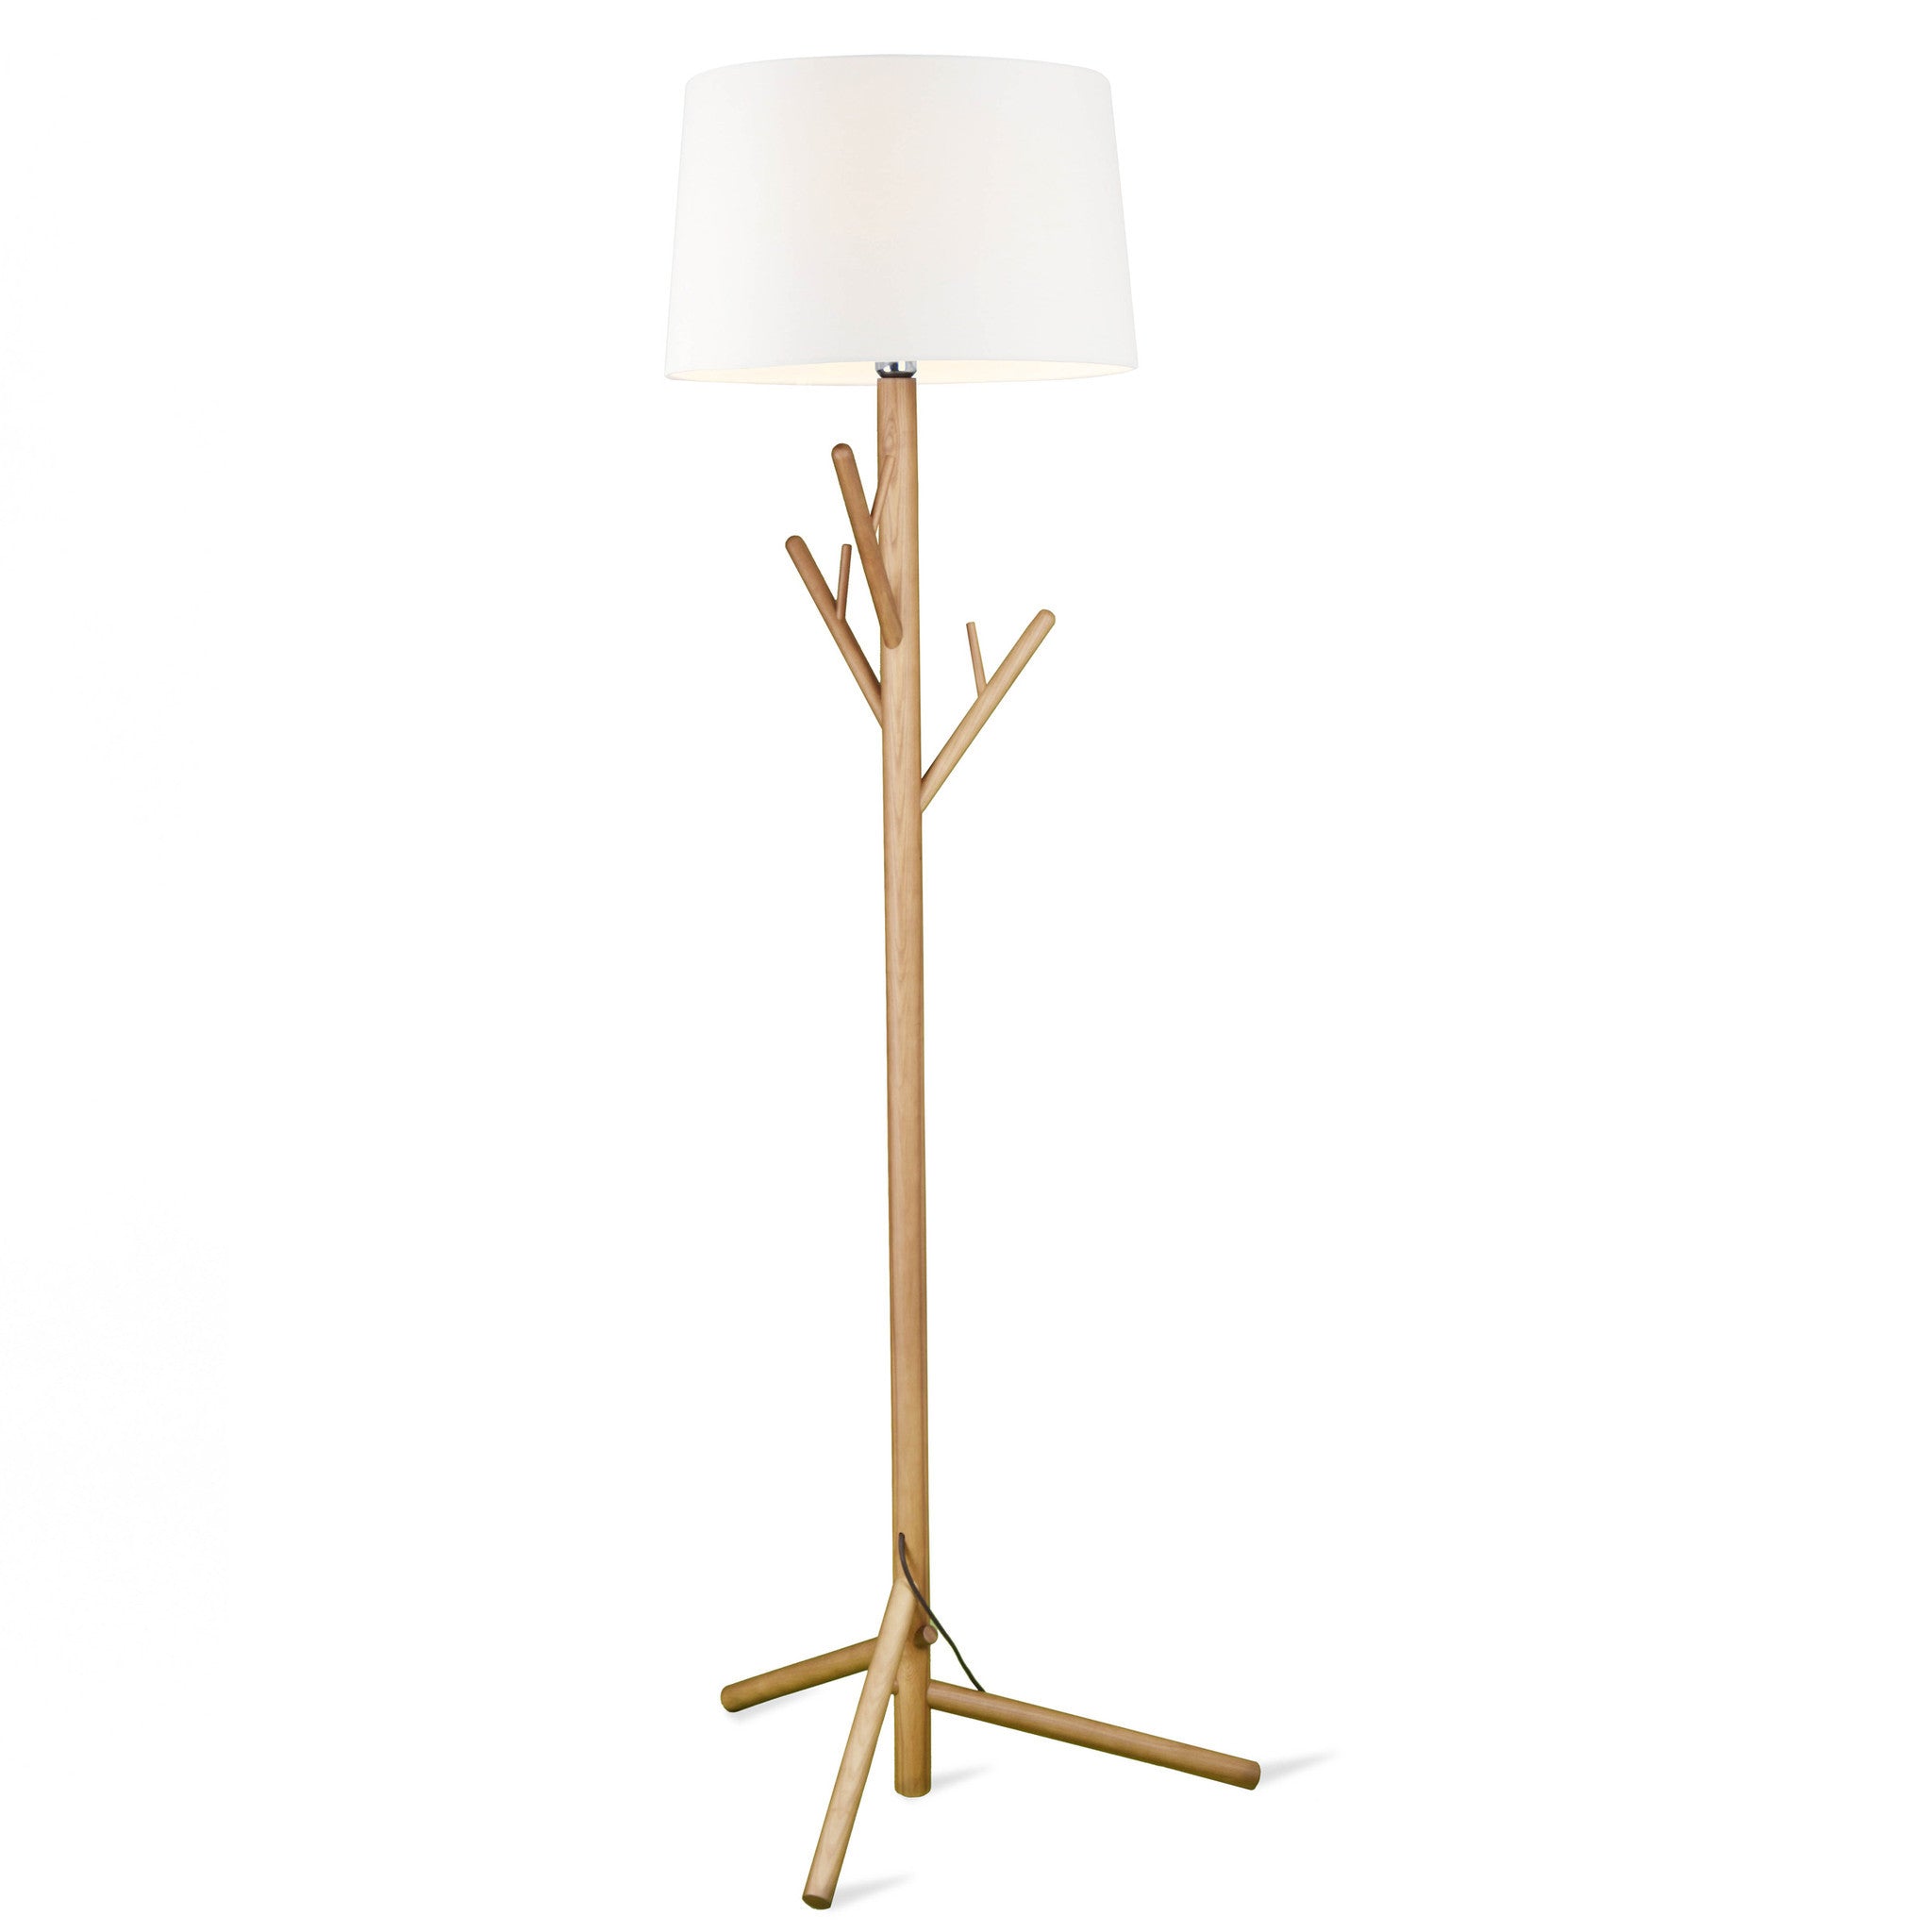 Hanger  Solid Wood Floor Lamp Bpmt17-N -  Floor Lamps | مصباح أرضي من الخشب الصلب المعلق - ebarza Furniture UAE | Shop Modern Furniture in Abu Dhabi & Dubai - مفروشات ايبازرا في الامارات | تسوق اثاث عصري وديكورات مميزة في دبي وابوظبي